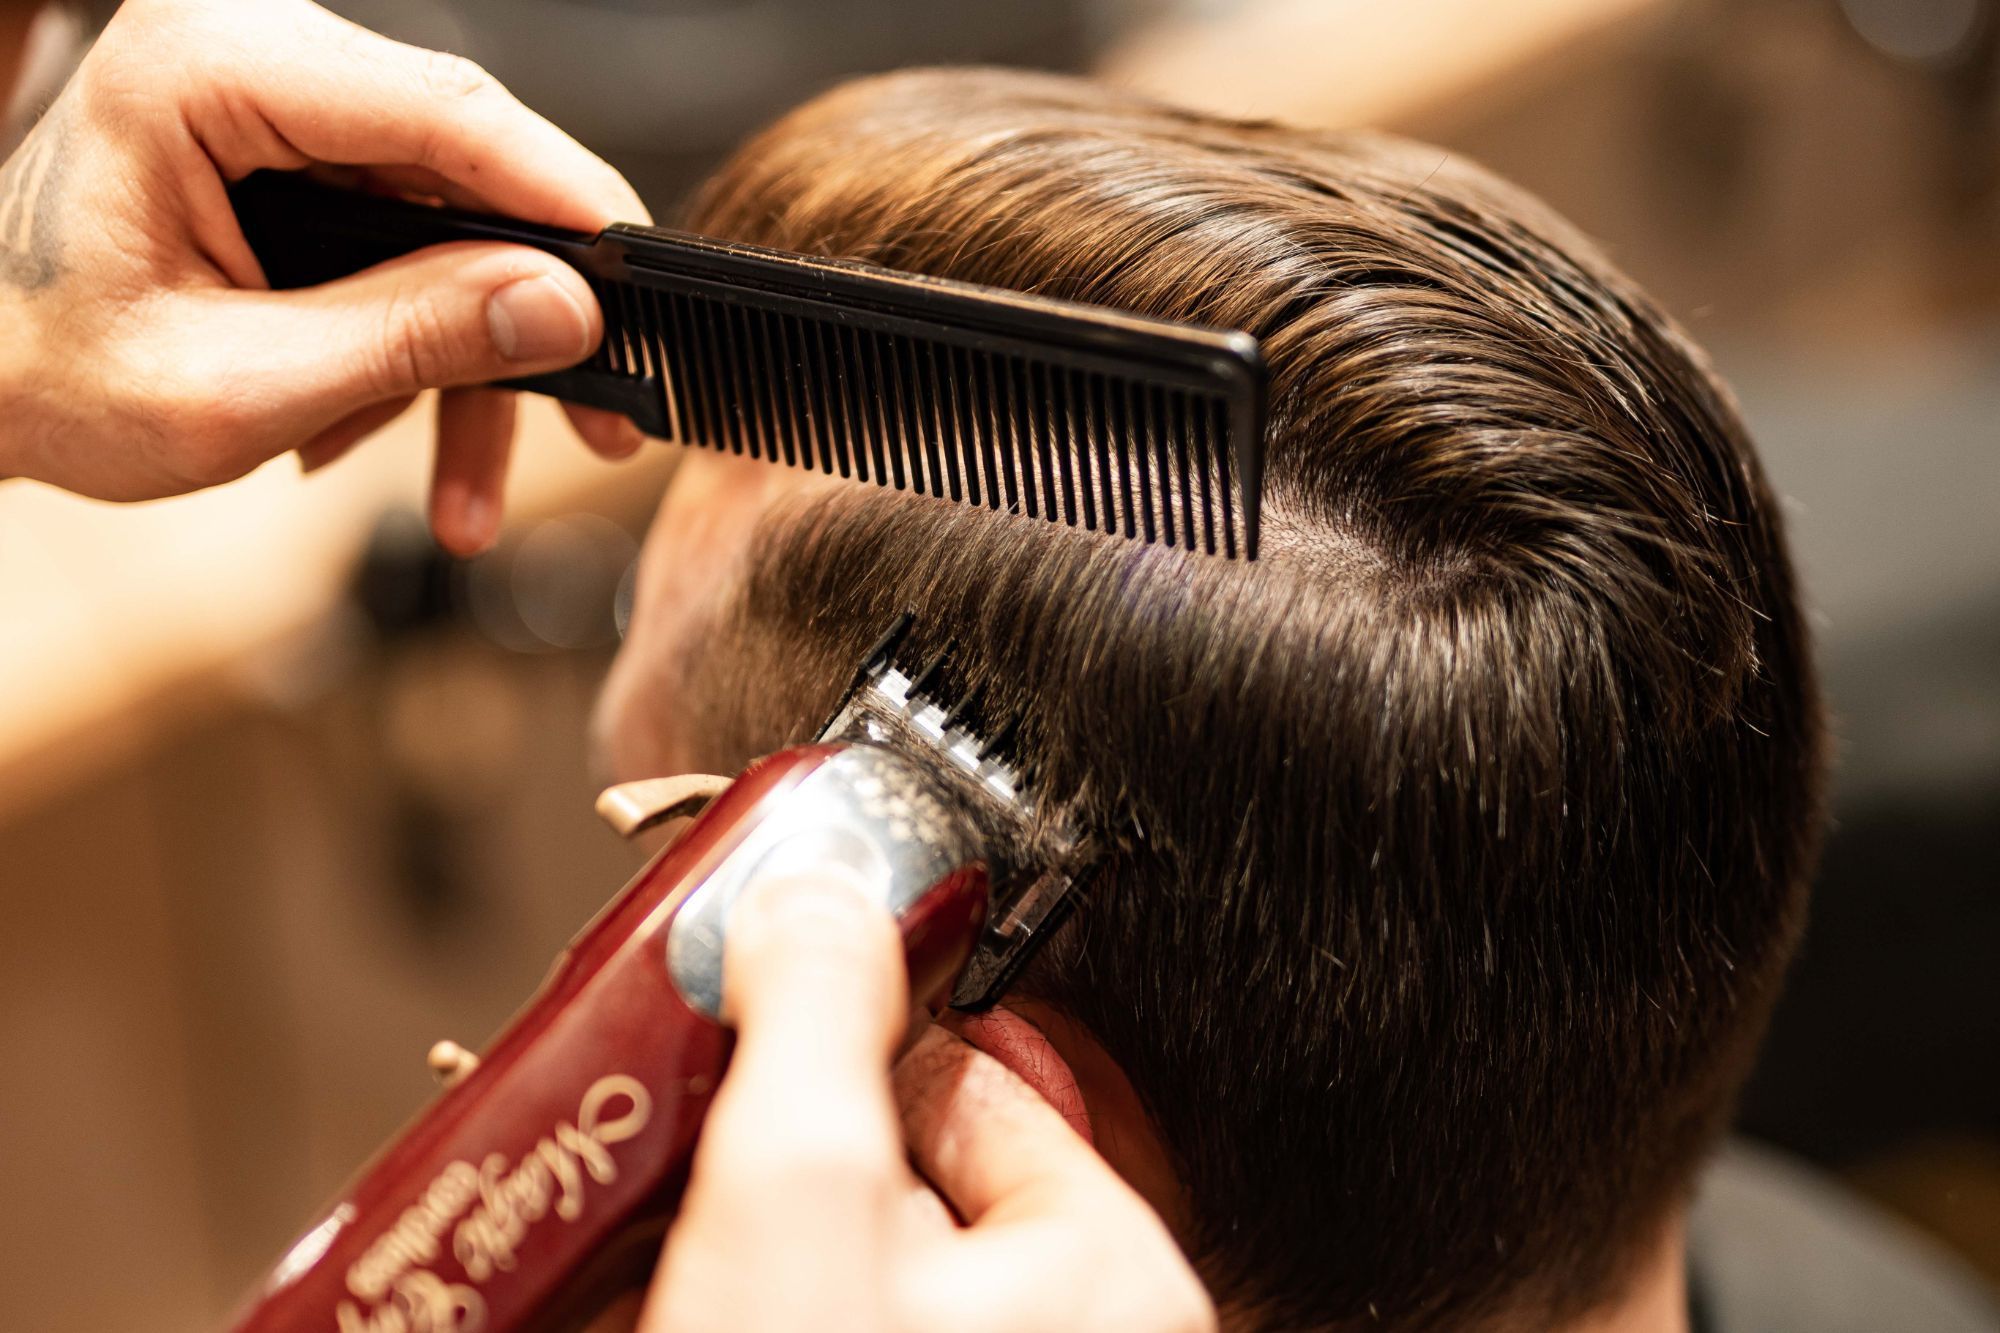 Portfolio usługi Strzyżenie Włosów + Stylizacja / Haircut